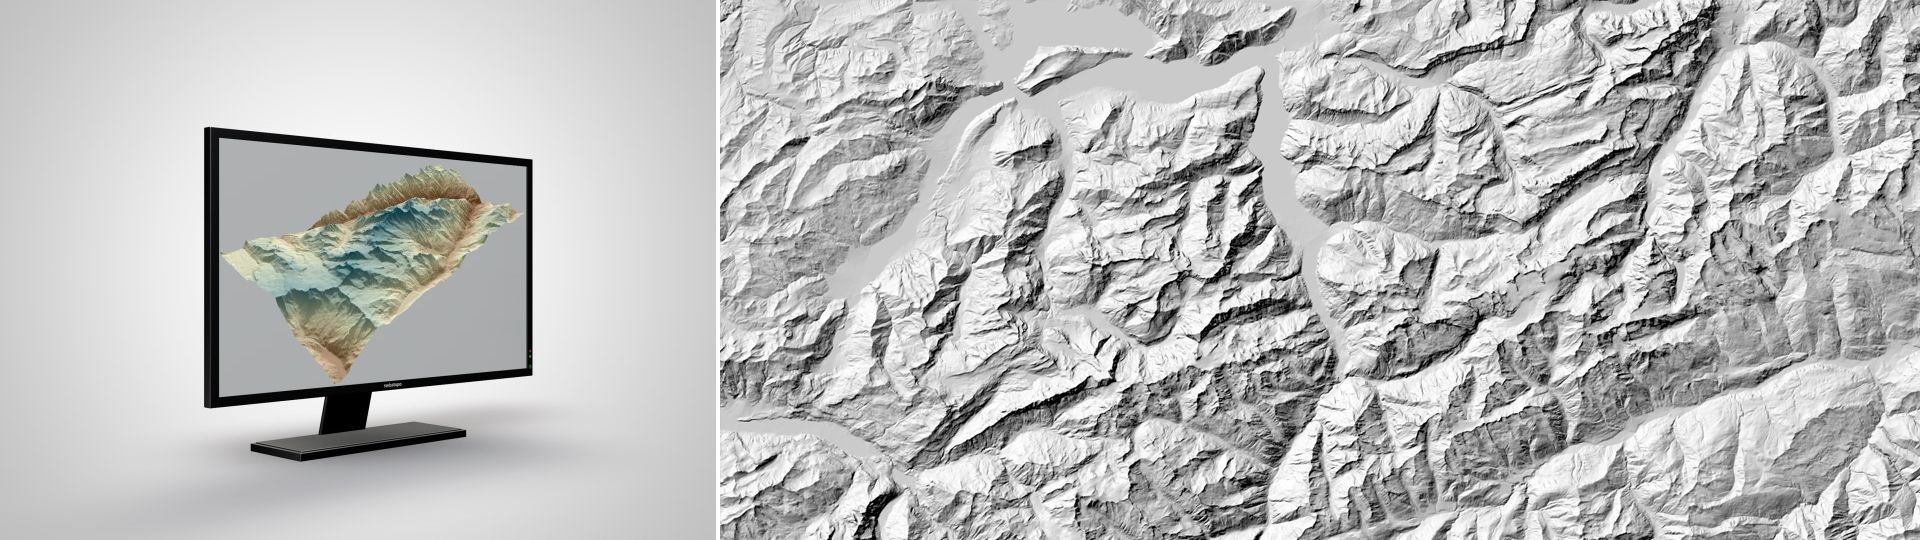 DHM25: Das digitale Höhenmodell der Schweiz